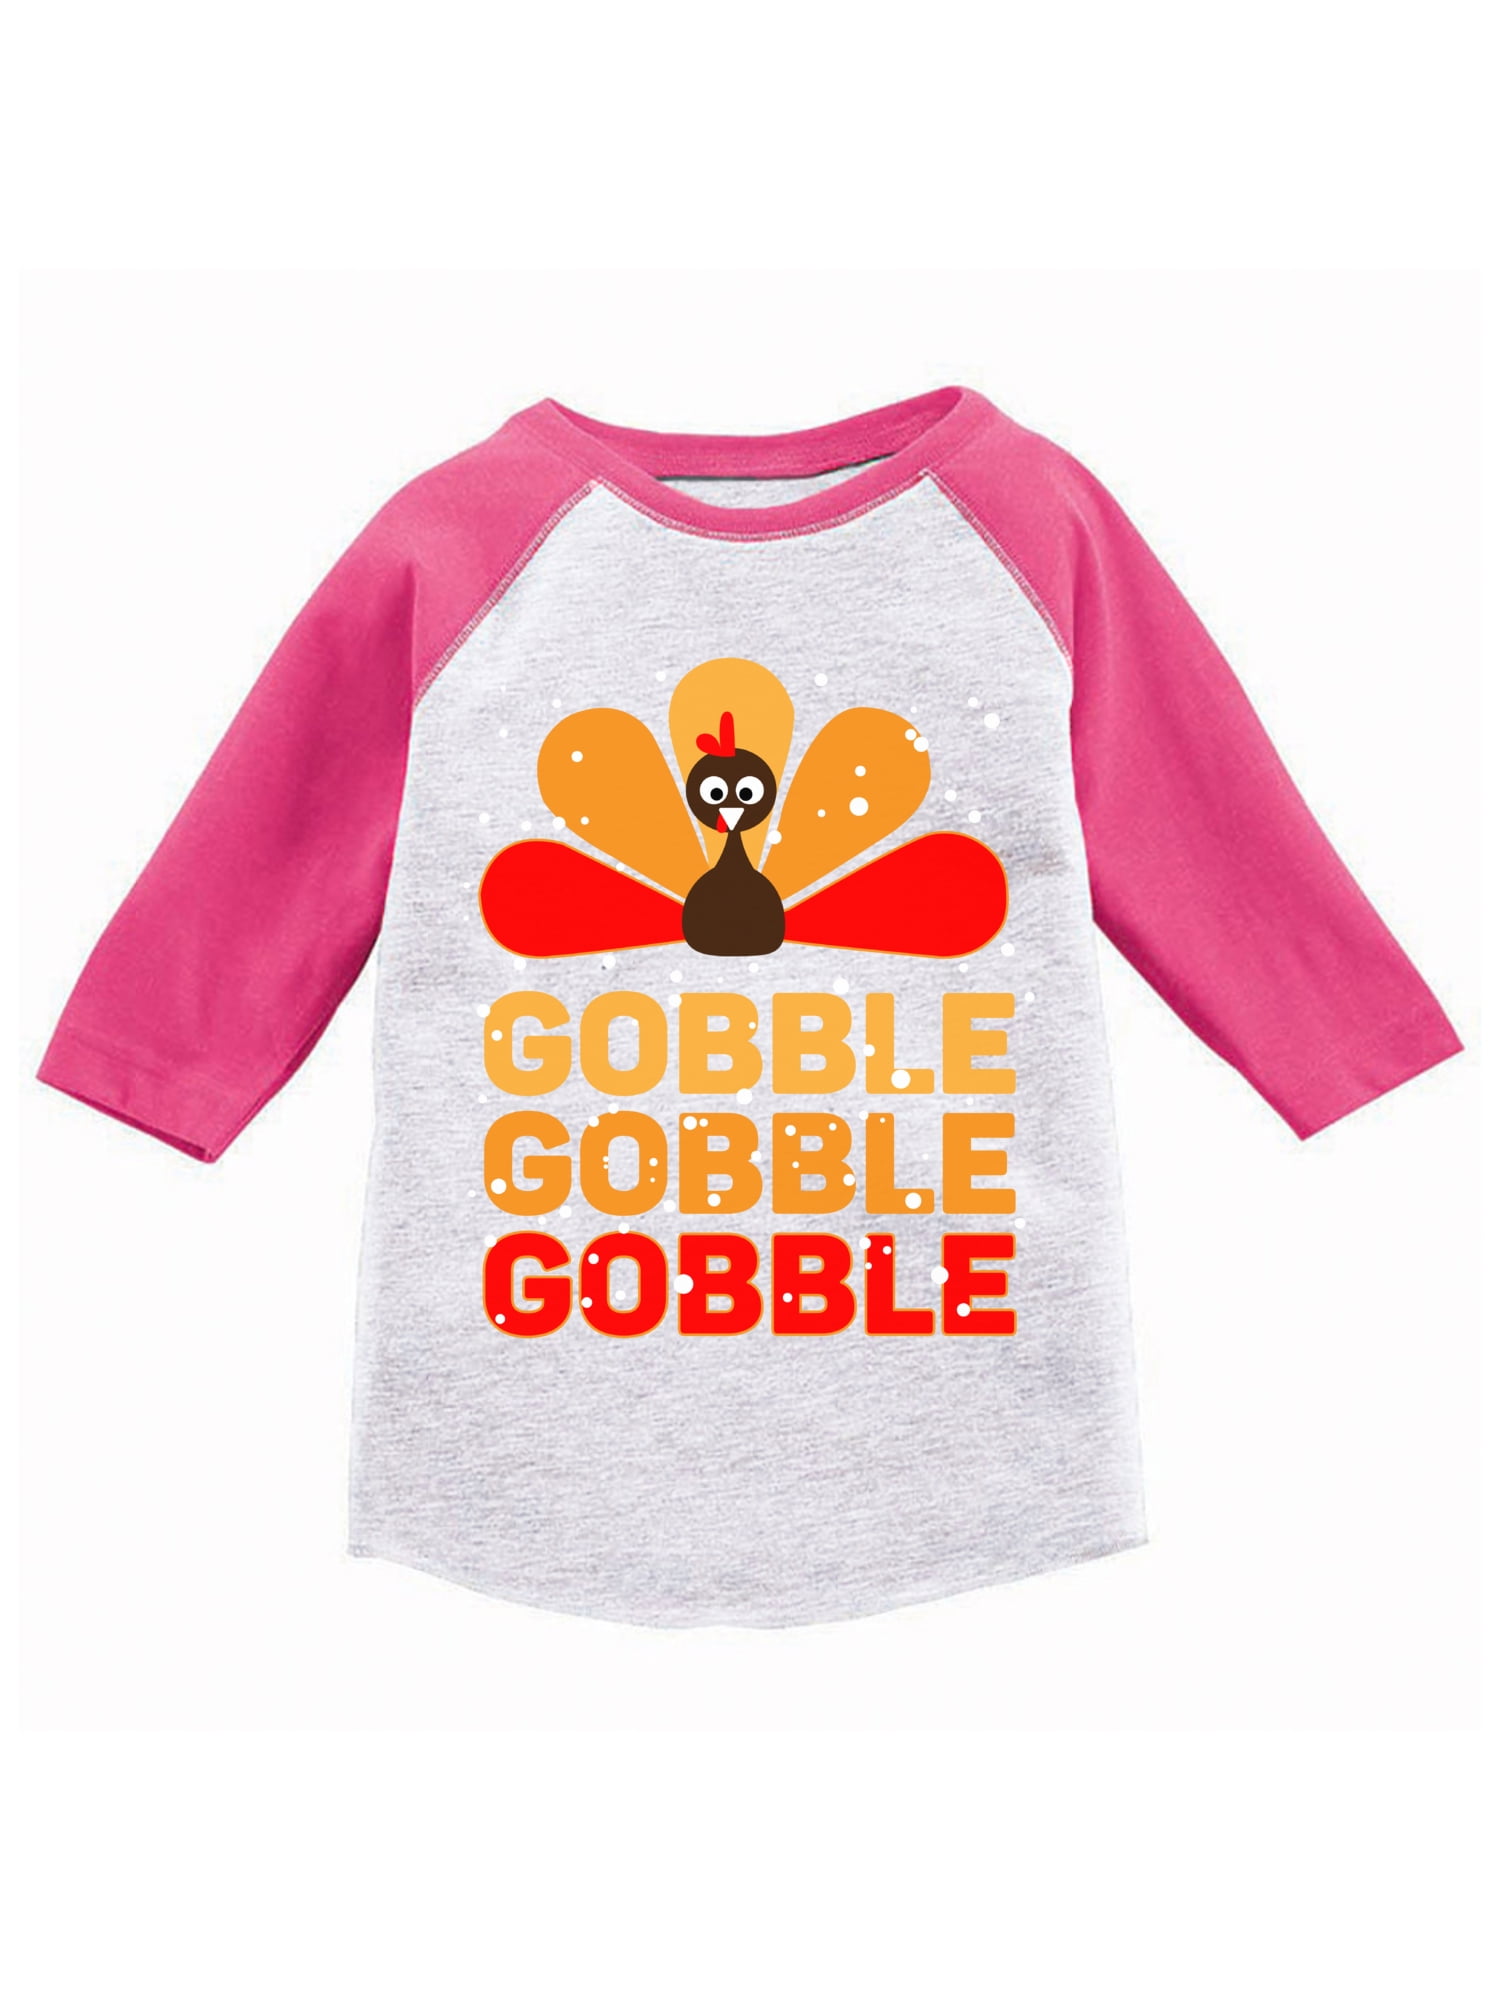 Thanksgiving Toddler Long Sleeve Shirt for Boys Girls Gobble Turkey Kids T-Shirt 